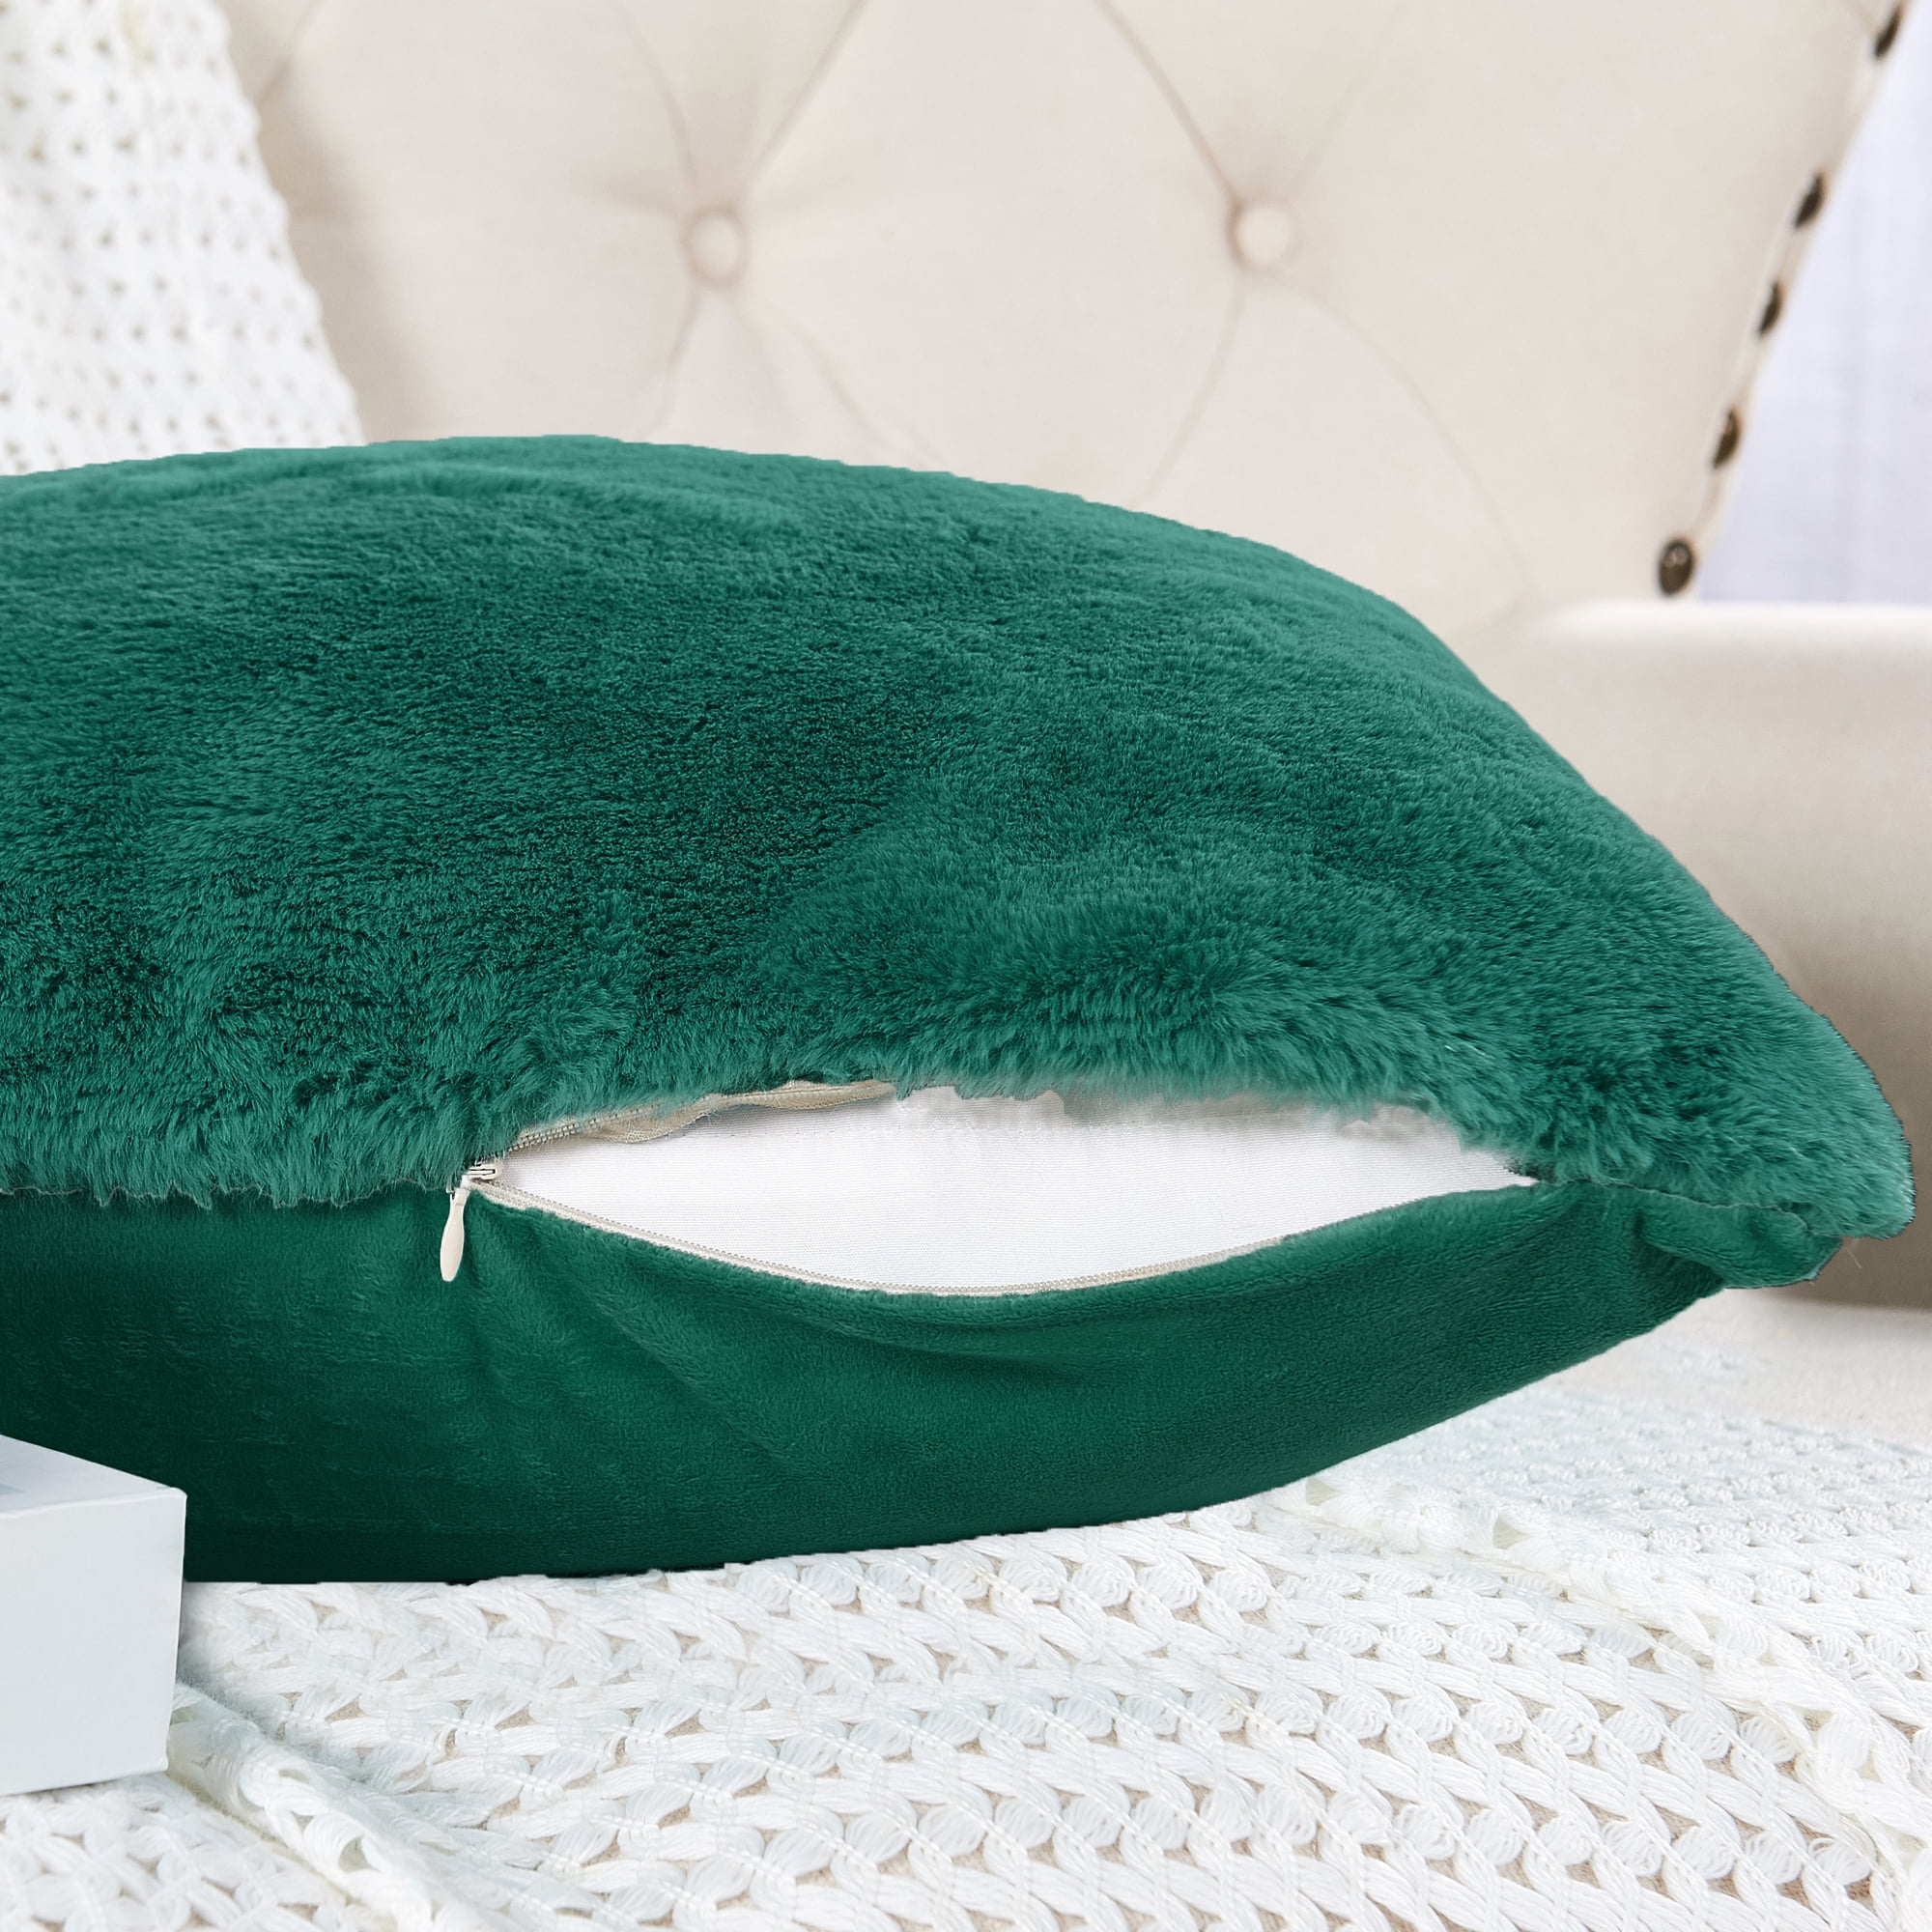 Funny Throw Pillows – The Emerald Fox Boutique